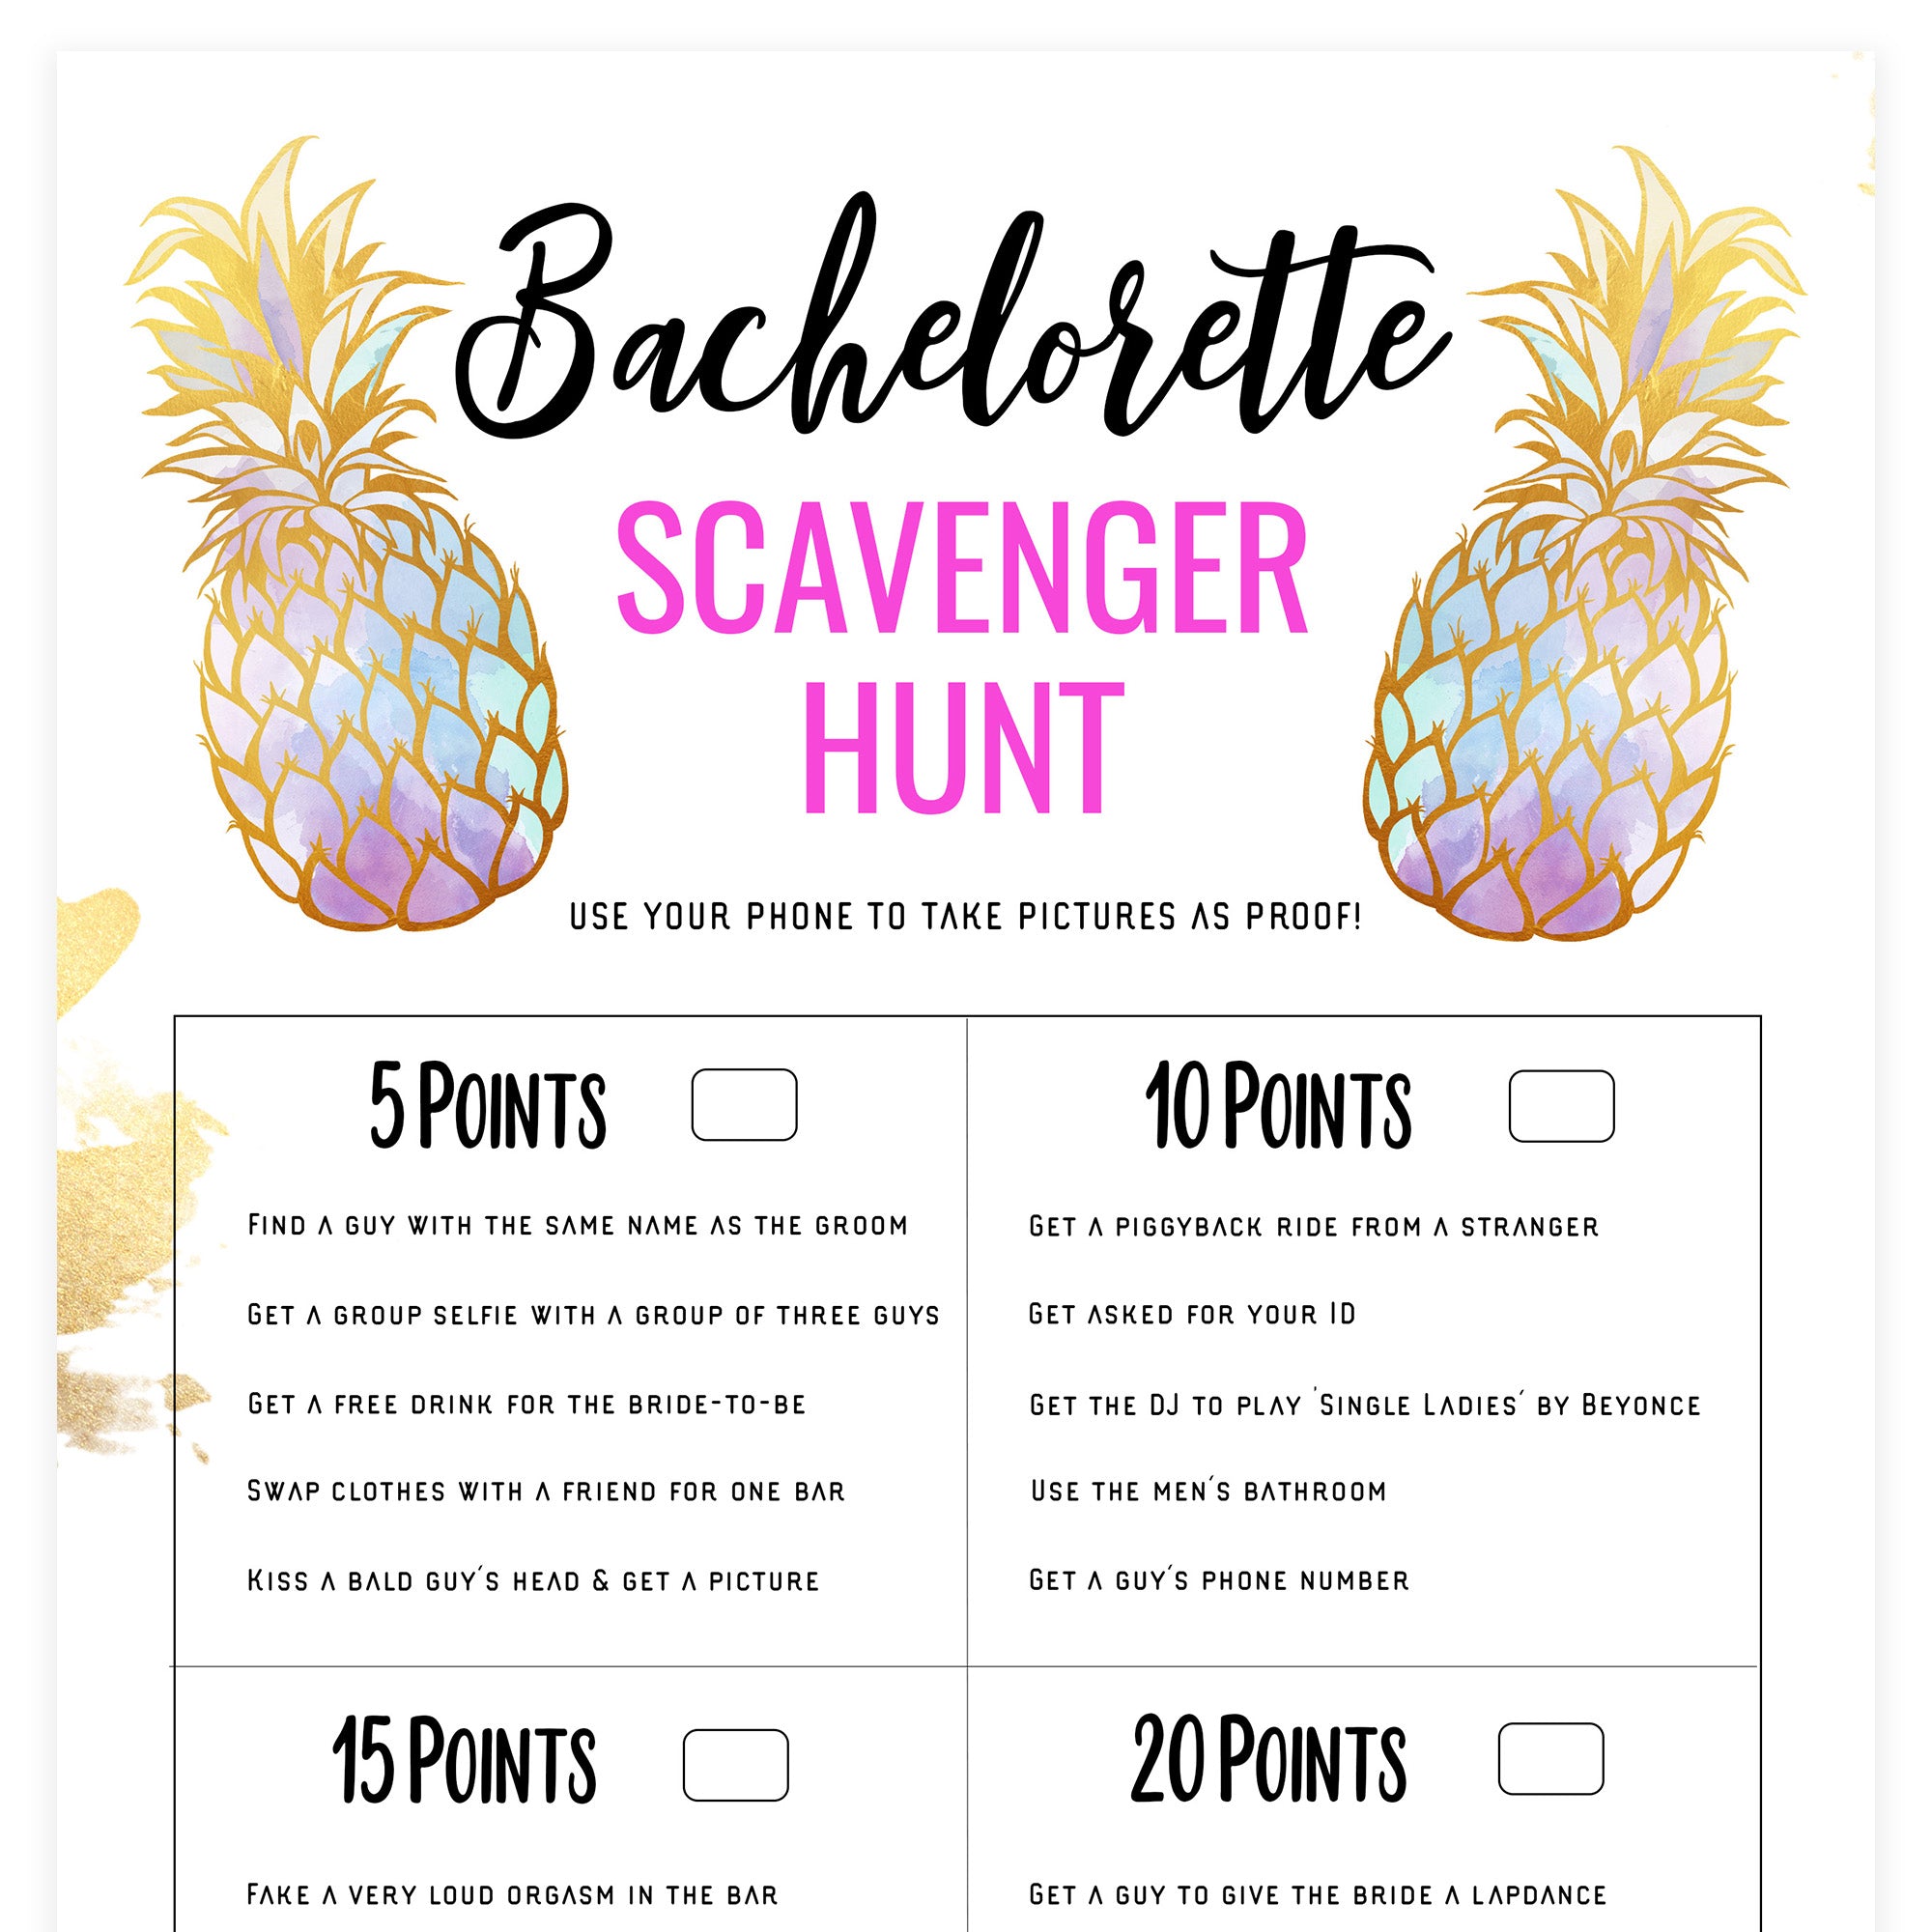 Bachelorette Scavenger Hunt - Gold Pineapple